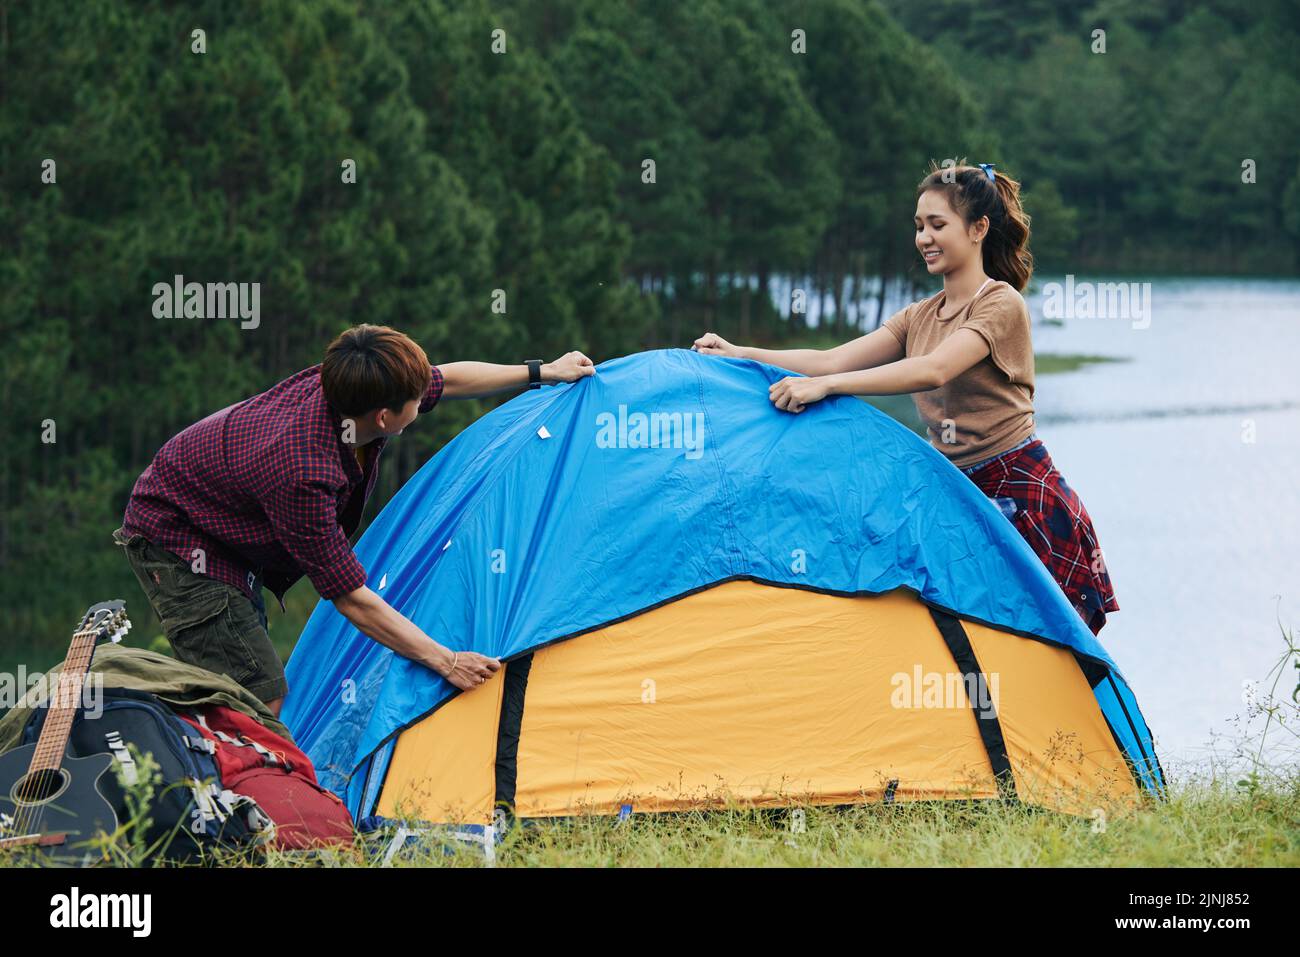 Fröhliche asiatische Touristen haben Spaß beim Aufstellen Zelt in malerischen Ort, grünen Wald und tiefen See im Hintergrund Stockfoto